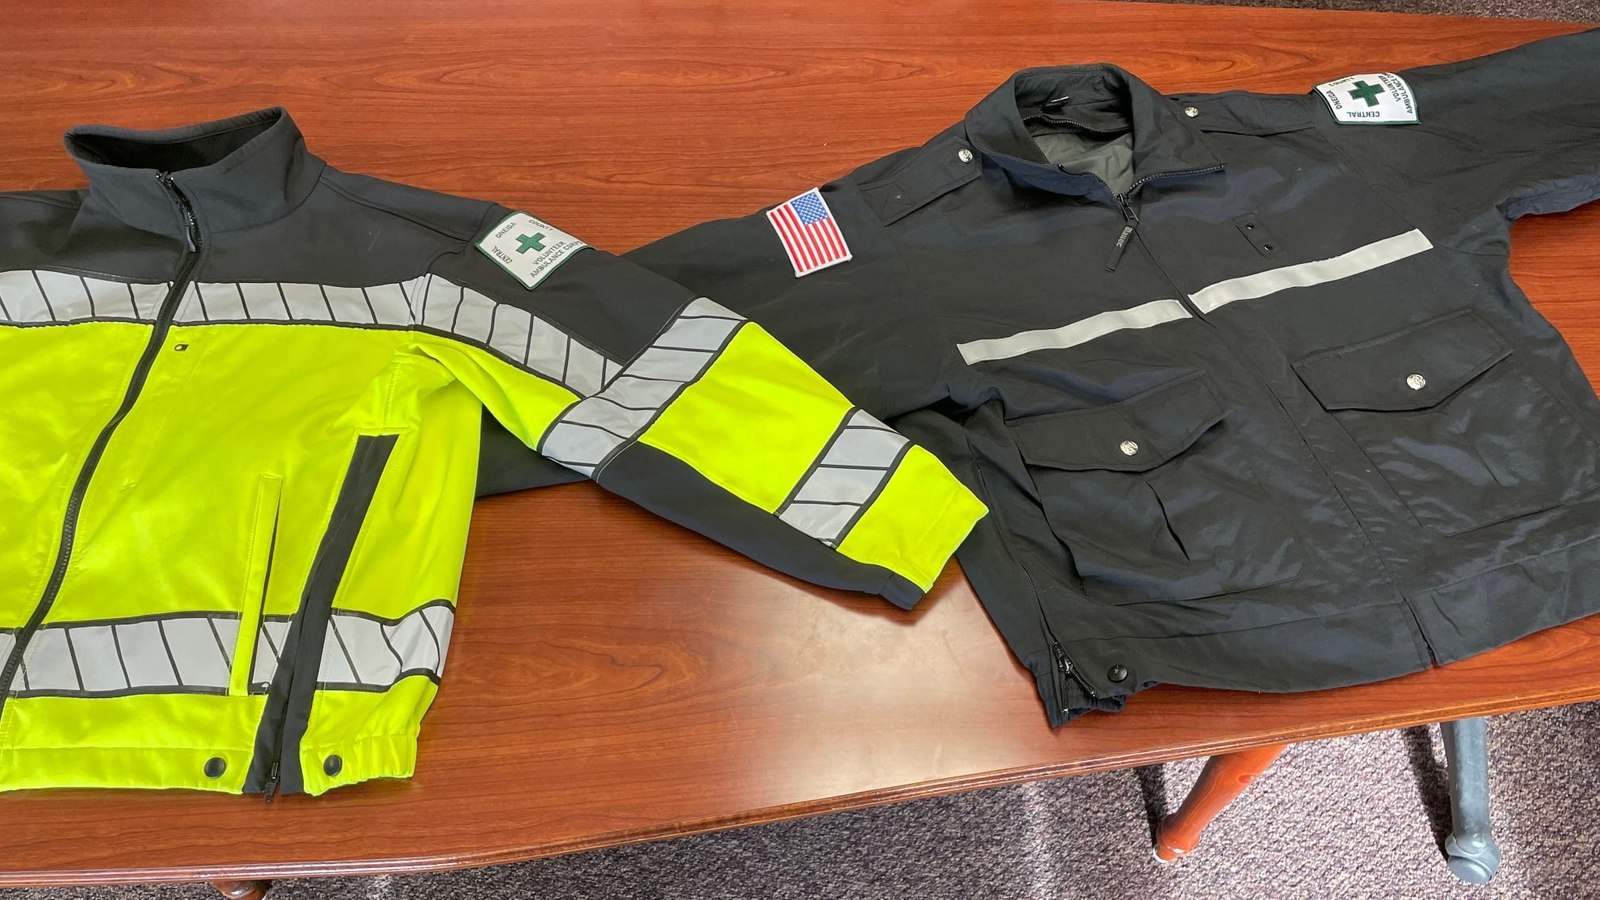 Registrering træk uld over øjnene Tradition Potential terrorist': Migrant wearing N.Y. county ambulance jacket caught  by border patrol